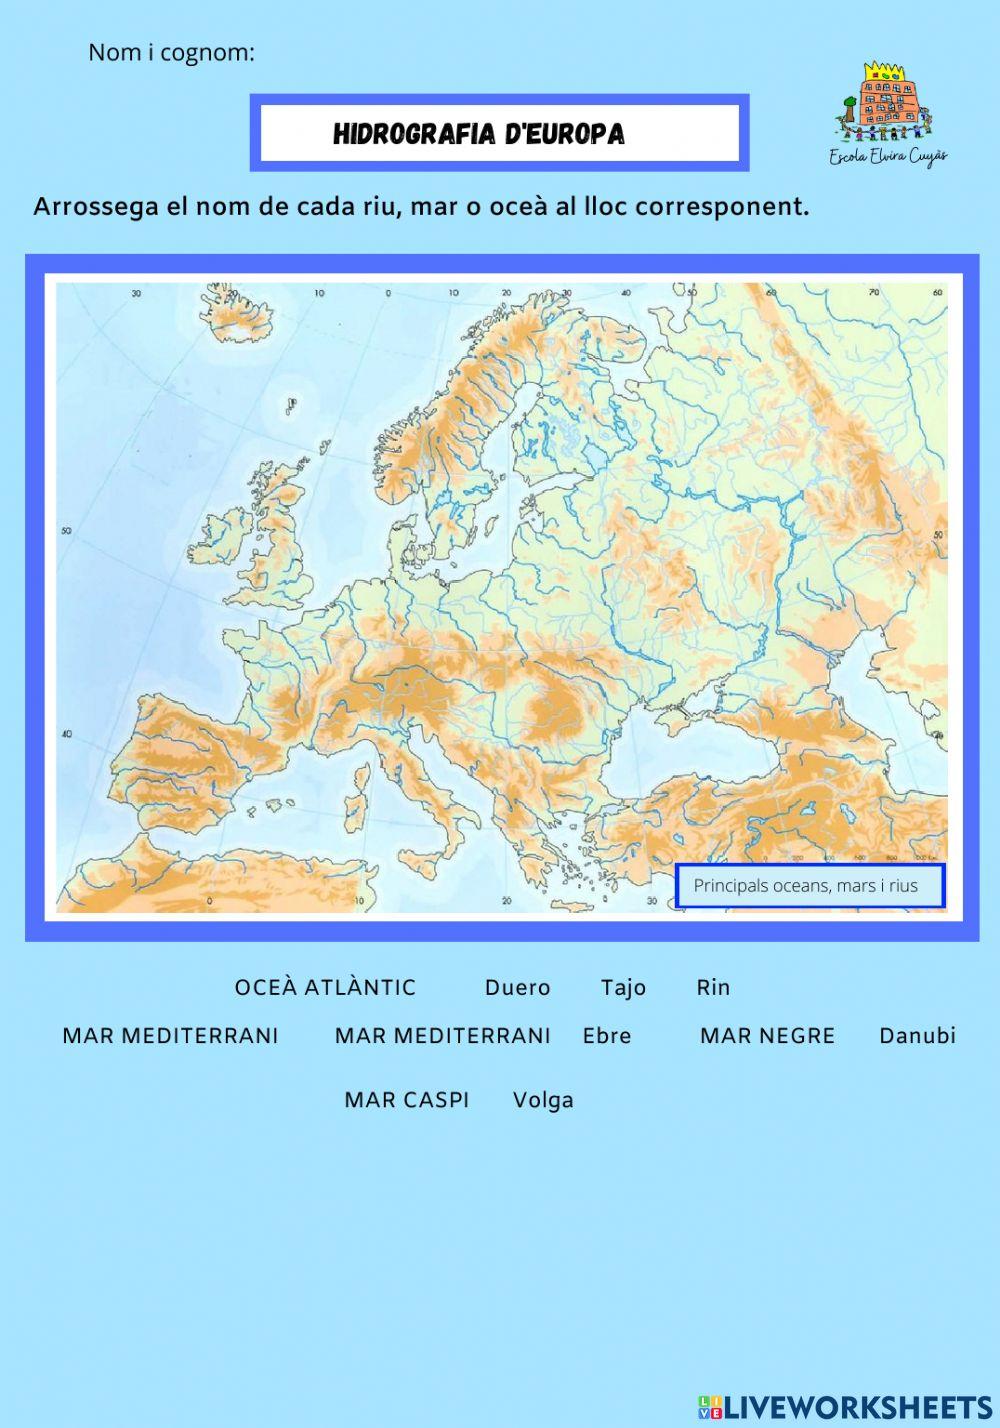 Hidrografia d'Europa adaptat